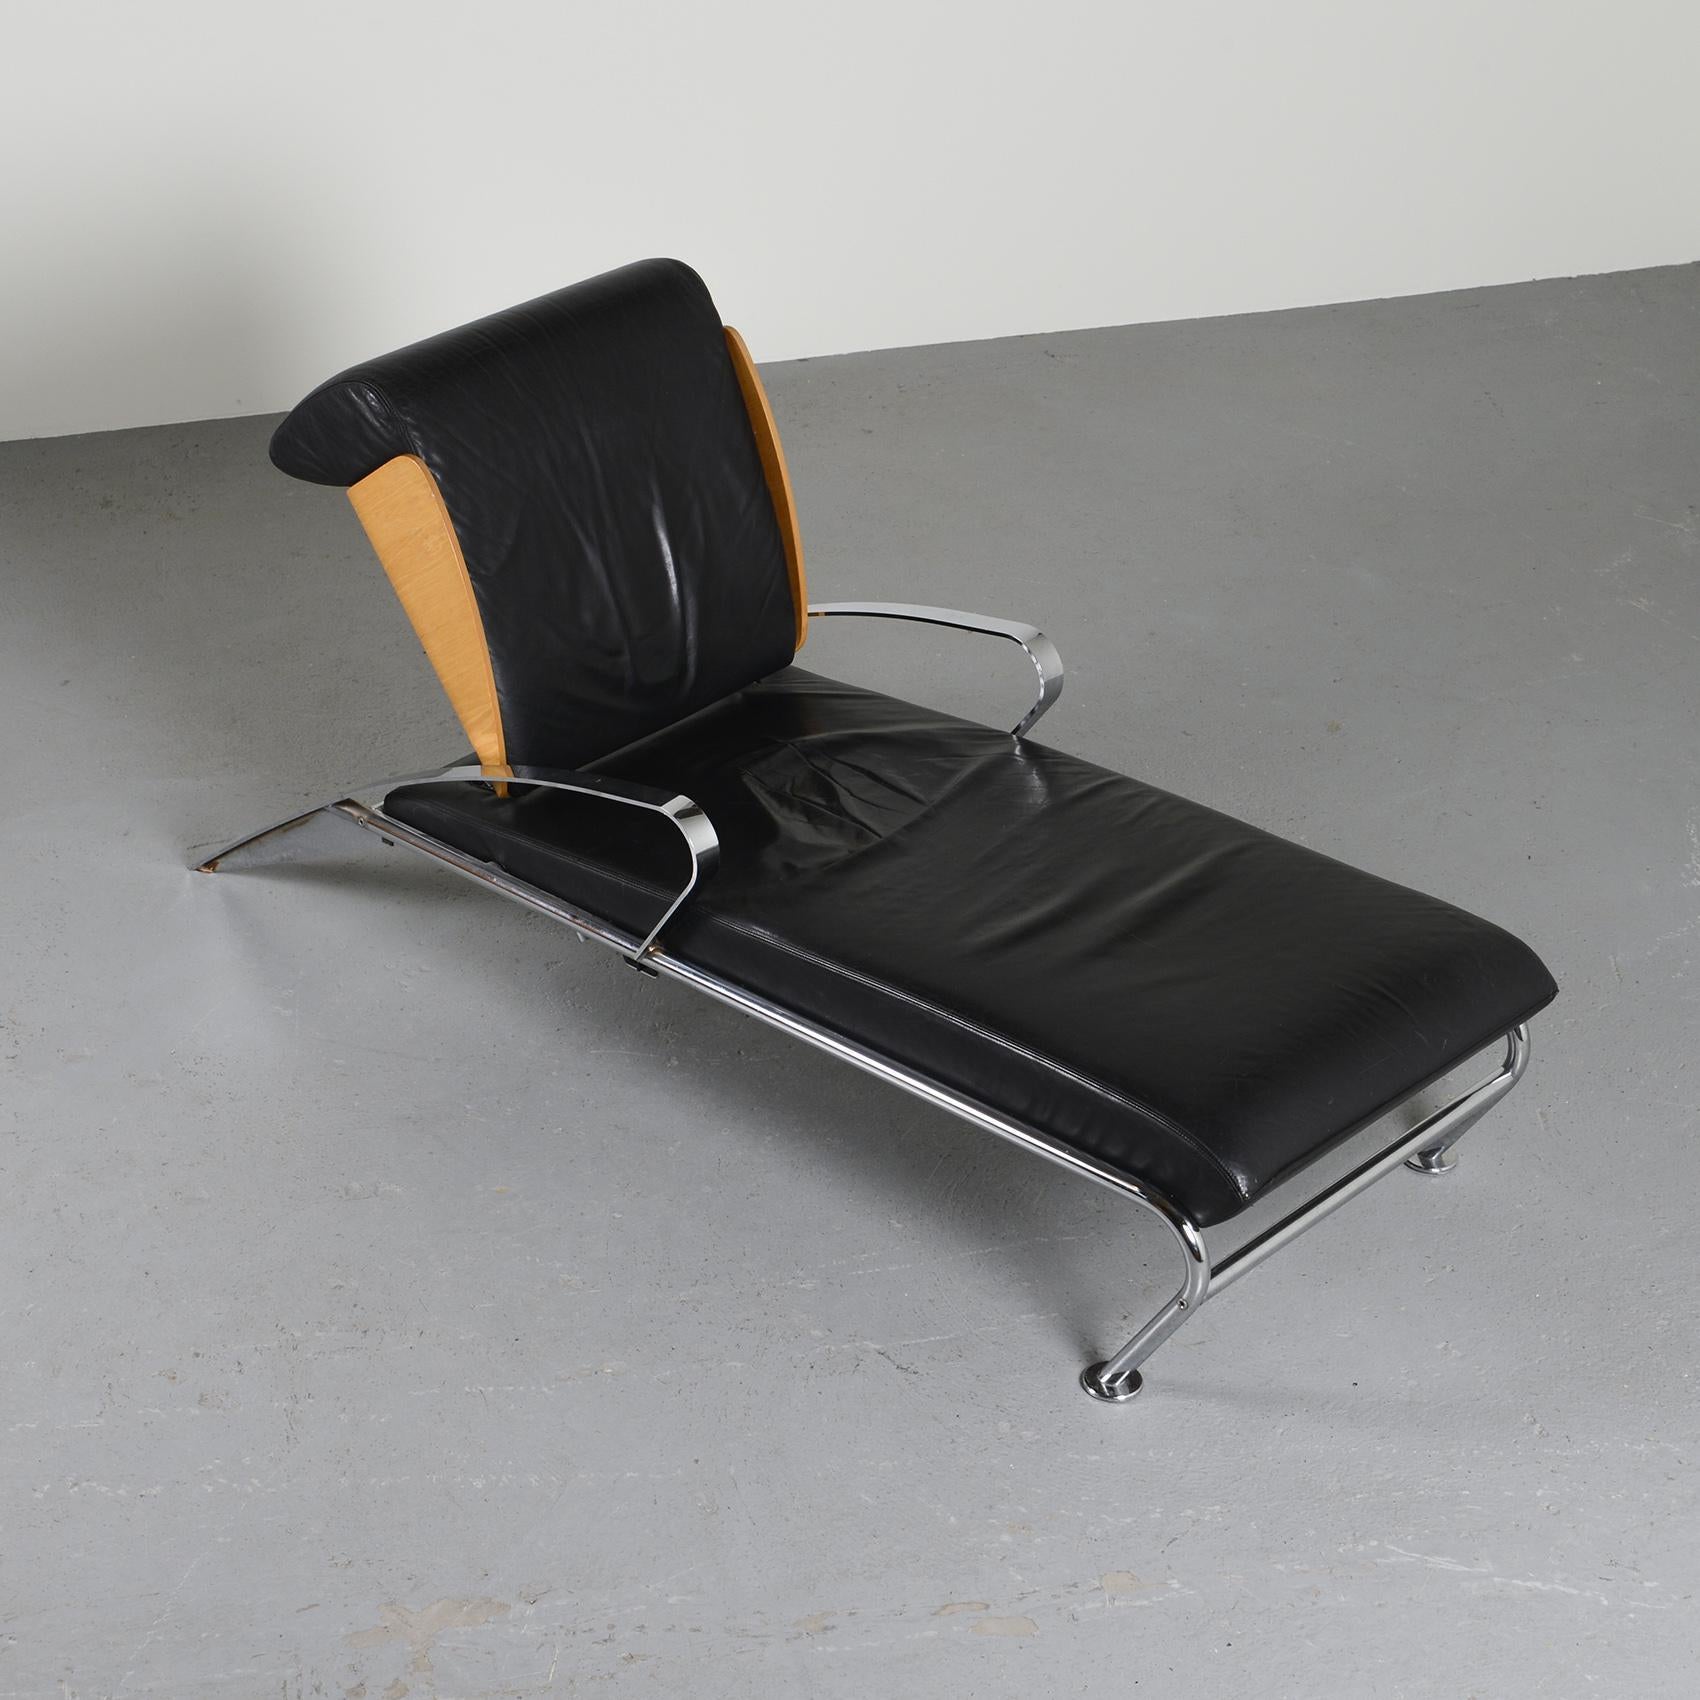 Italian Futuro Chaise Lounge by Massimo Iosa-Ghini, Moroso, 1986